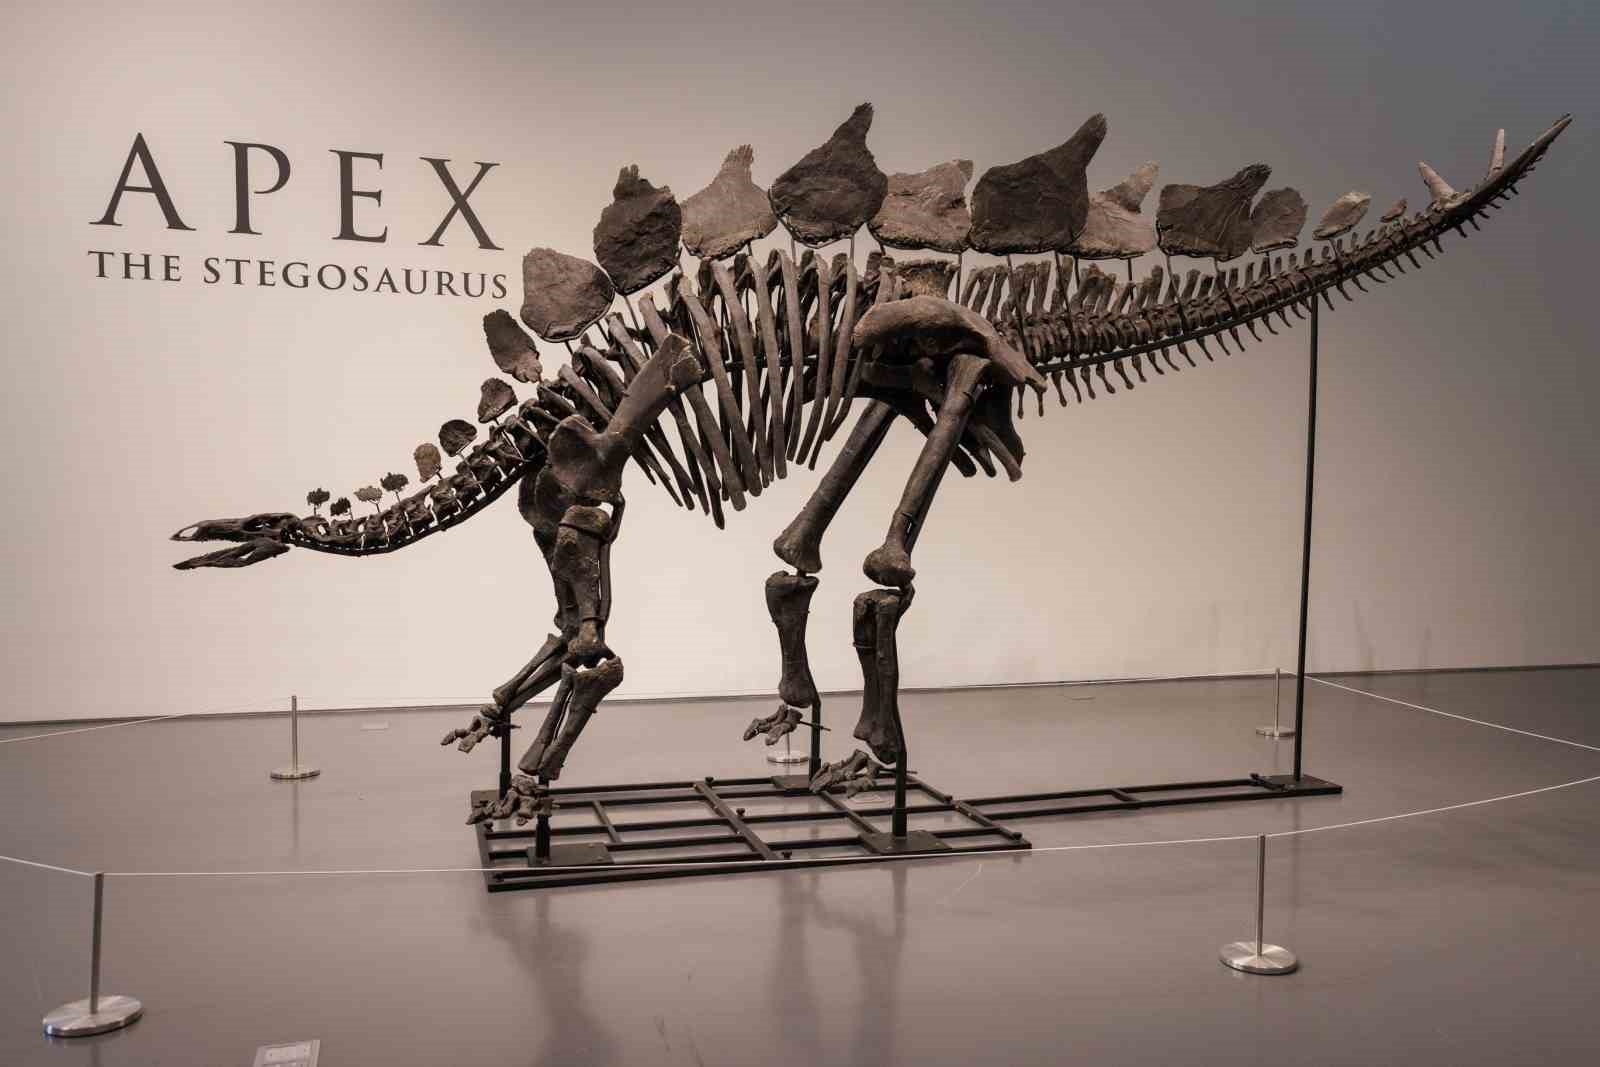 Dinozor iskeletinin satıldığı fiyat dudak uçuklattı